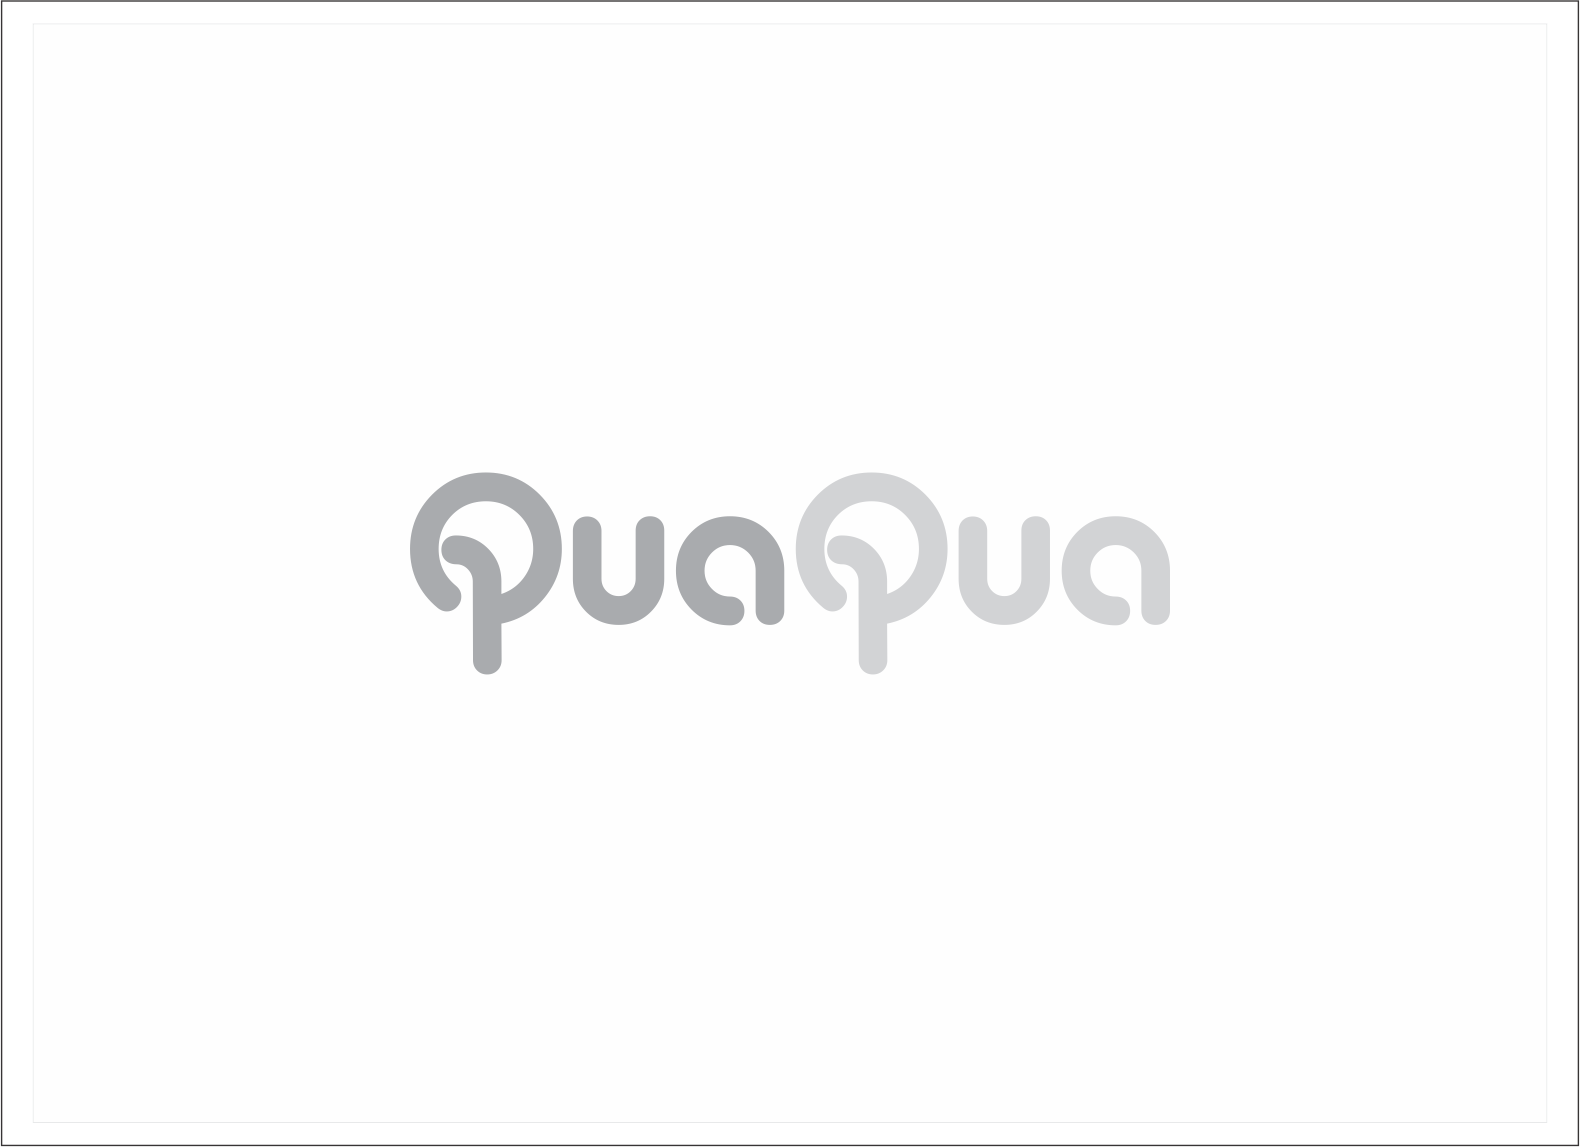 PuaPua Logo Wallpaper